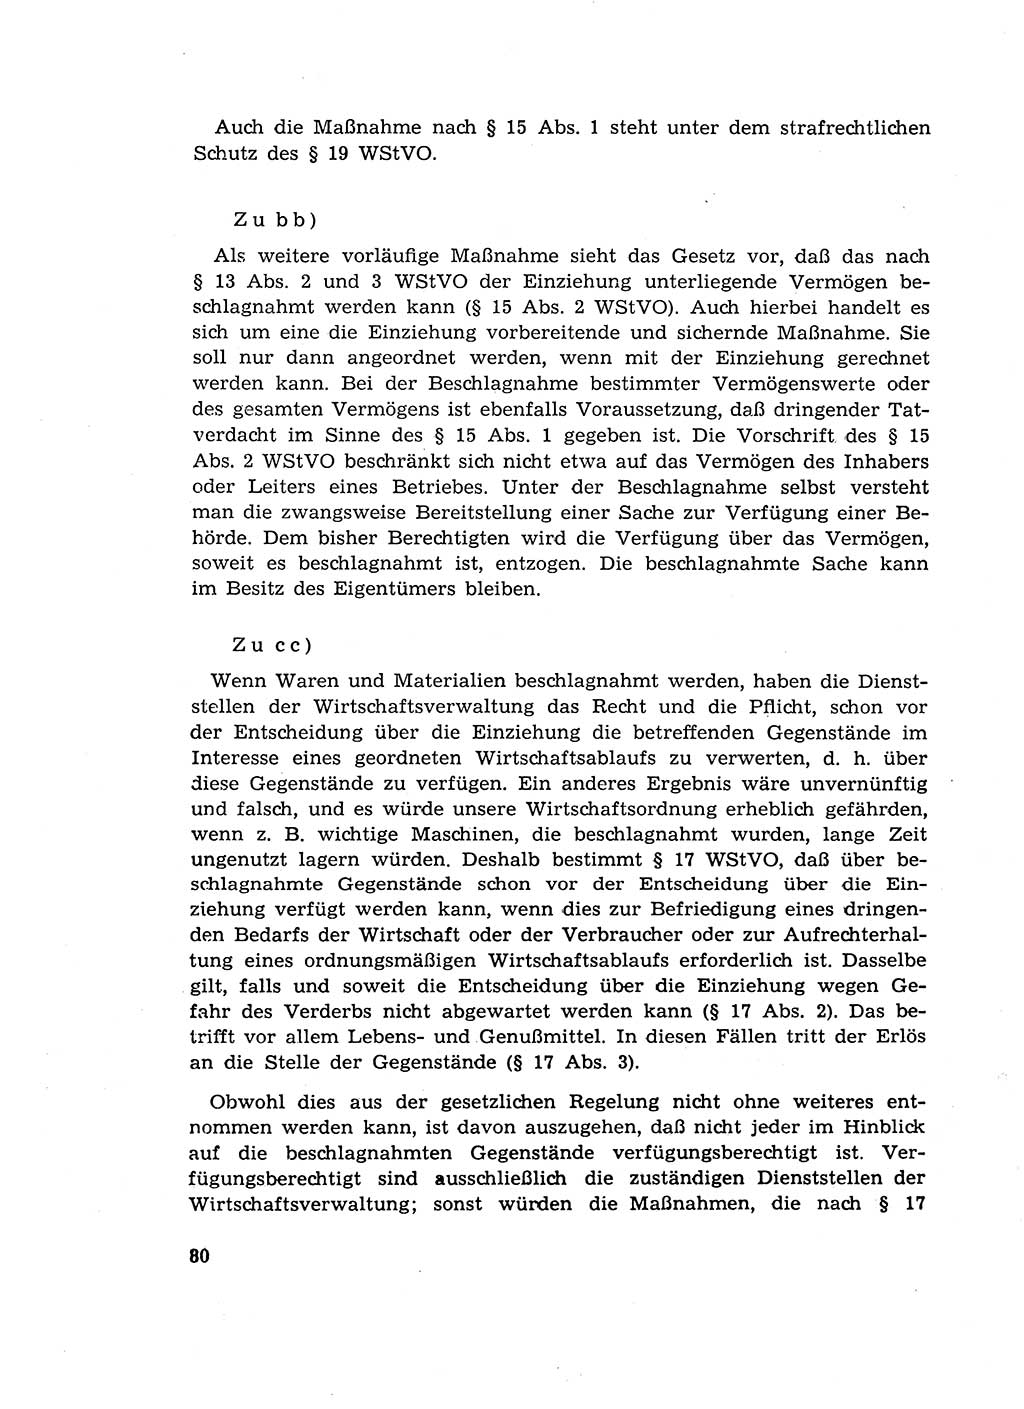 Materialien zum Strafrecht, Besonderer Teil [Deutsche Demokratische Republik (DDR)] 1955, Seite 80 (Mat. Strafr. BT DDR 1955, S. 80)